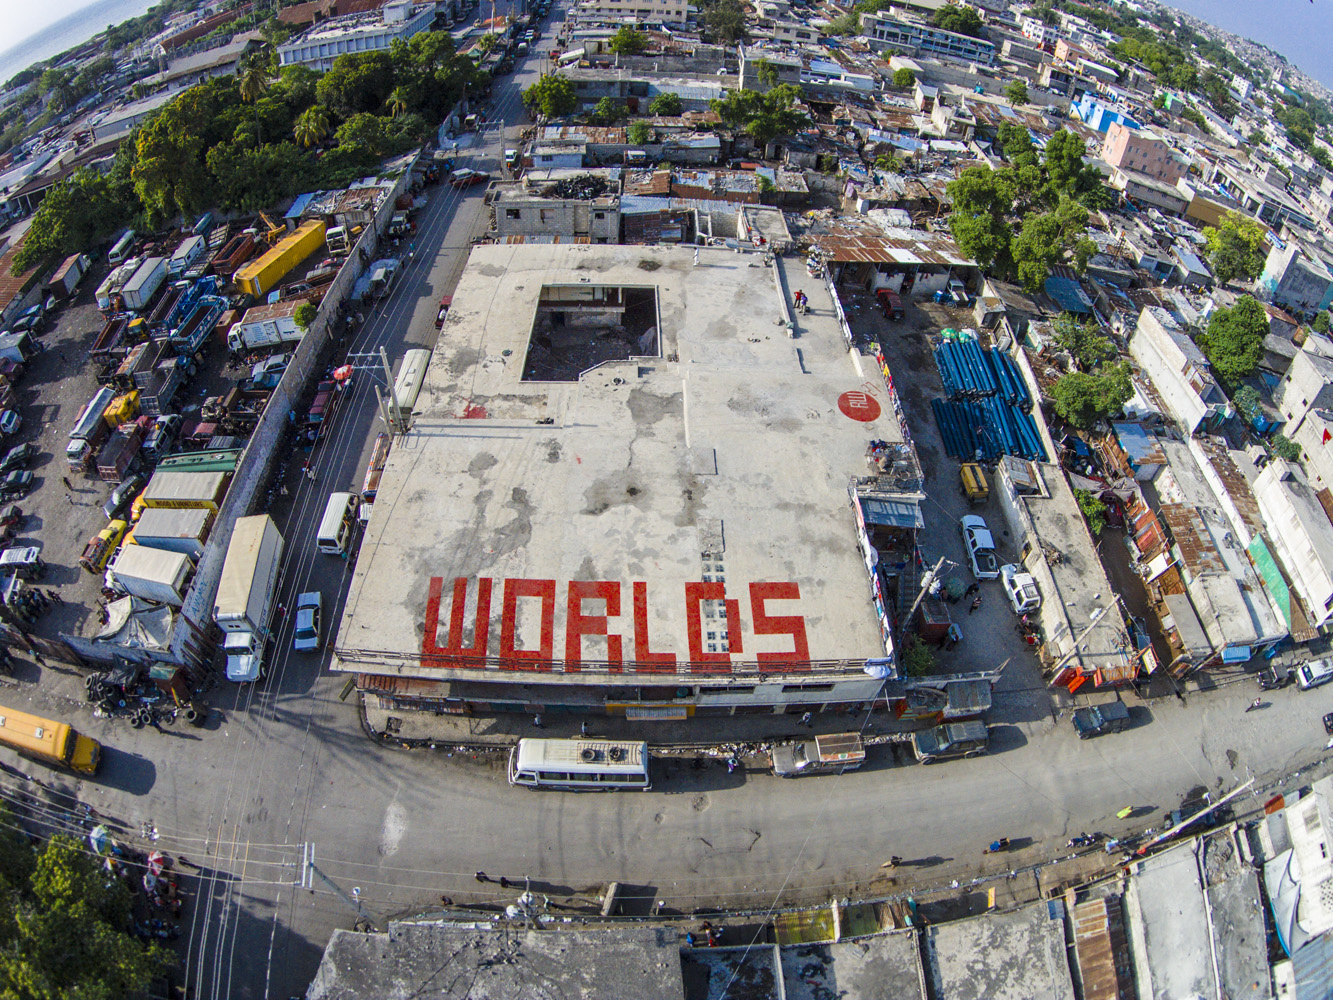 Das Wort "Worlds" in großen roten Buchstaben auf einem Flachdach in Haiti, Sicht von oben